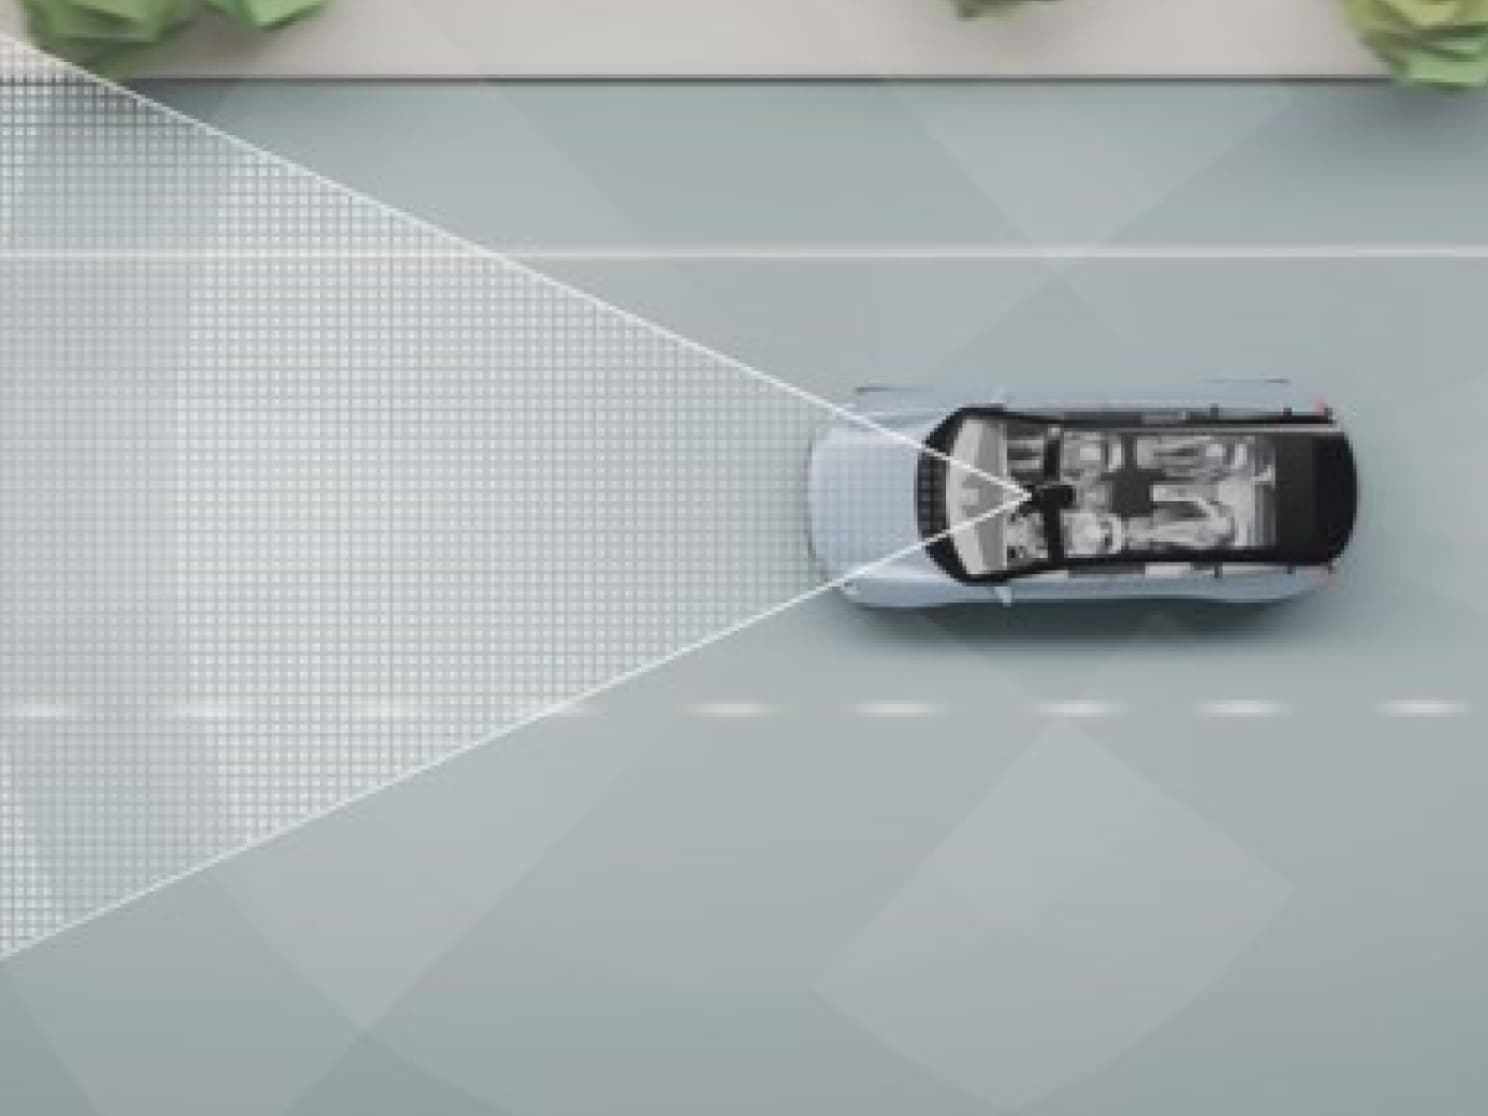 Representación digital de un vehículo en carretera con líneas y otros objetos.